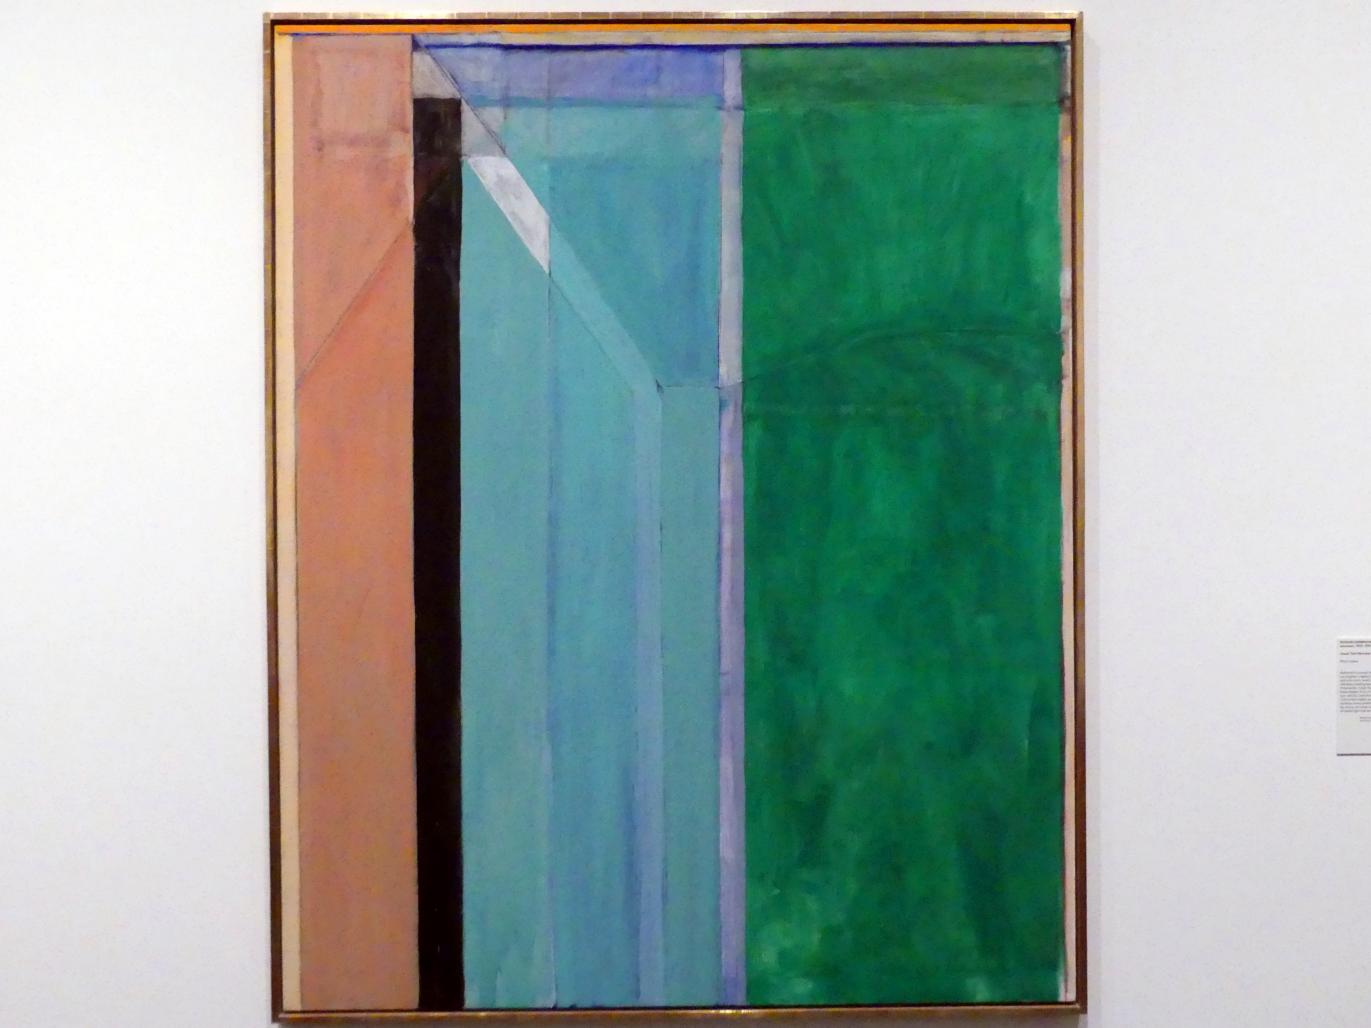 Richard Diebenkorn (1970), Ocean Park (Nummer 30), New York, Metropolitan Museum of Art (Met), Saal 924, 1970, Bild 1/2